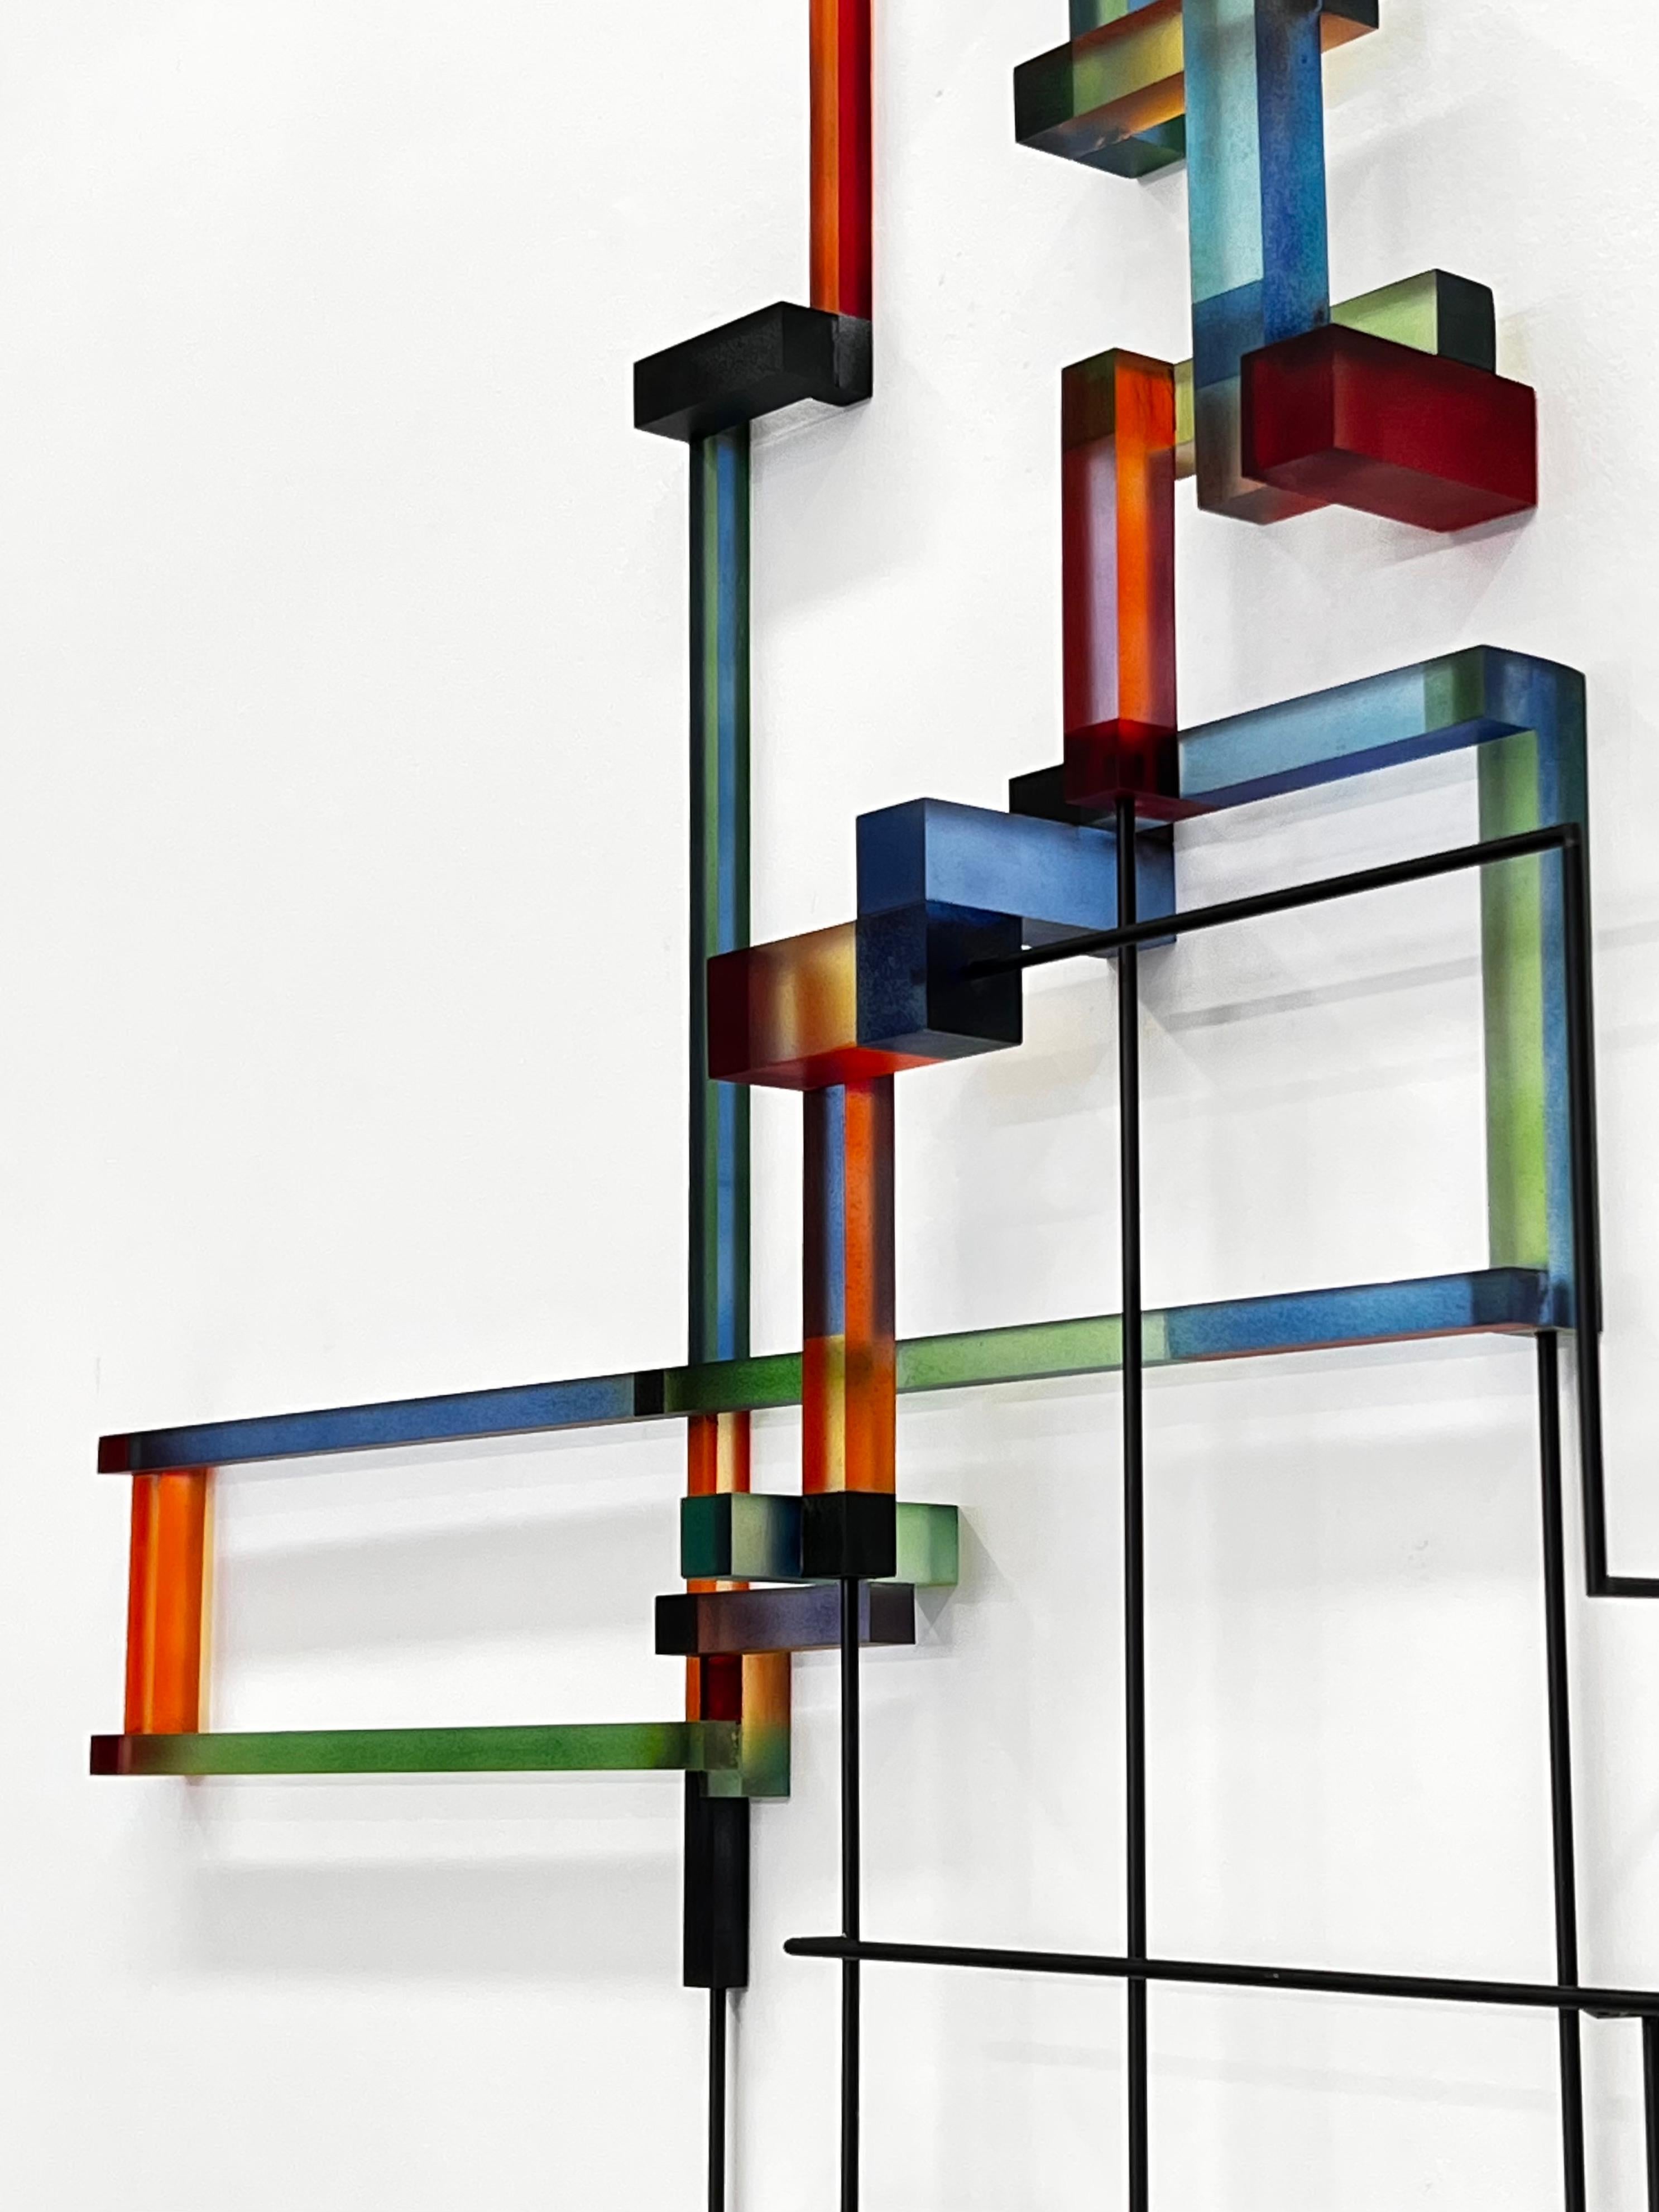 Henri : contemporary modern abstract geometric sculpture - Sculpture by Greg Chann